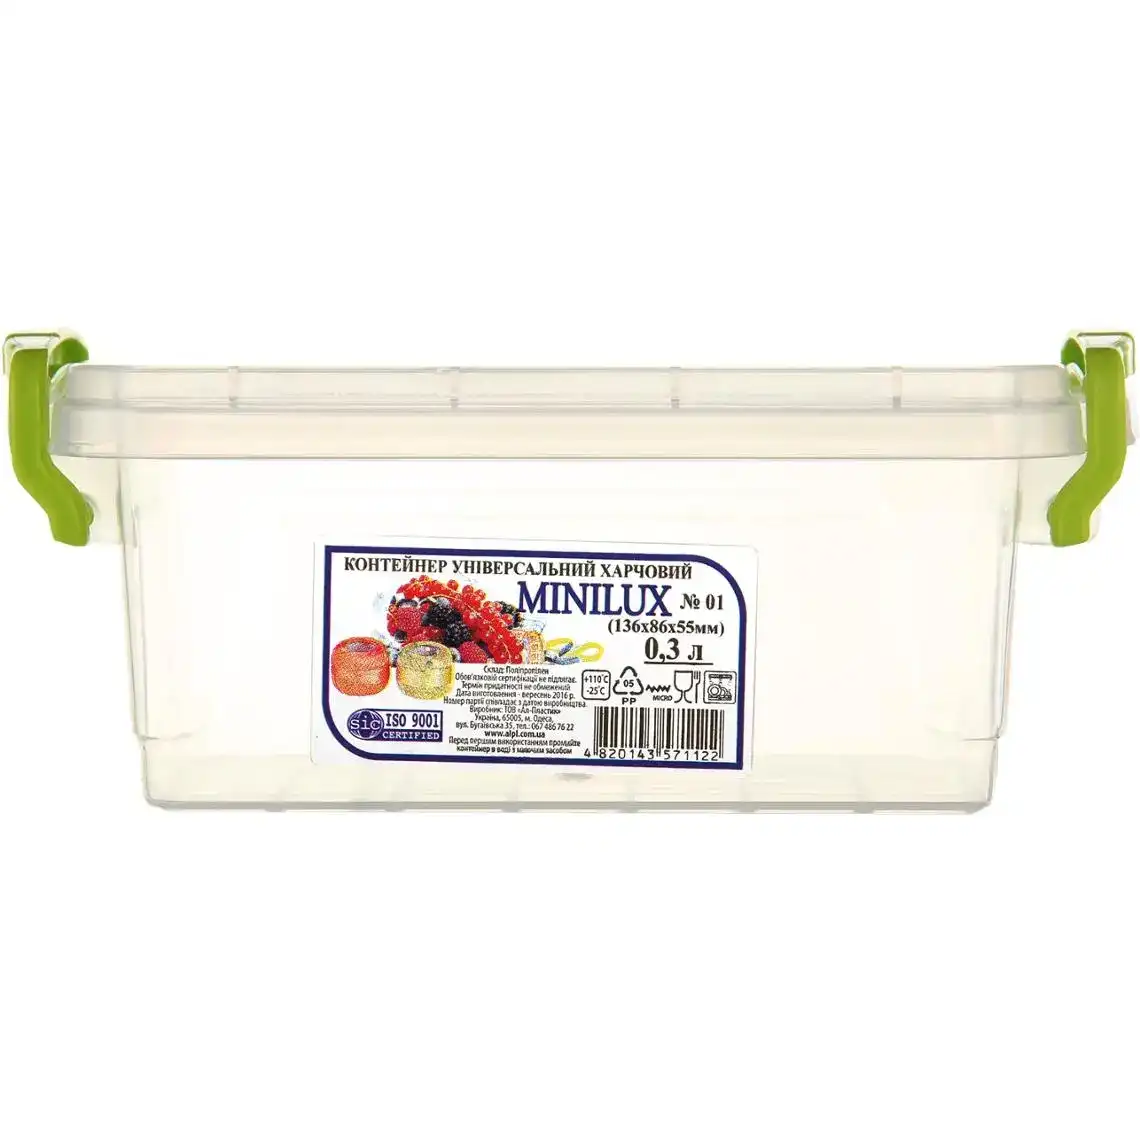 Контейнер Ал-Пластик харчовий Minilux №01 універсальний 0.3 л